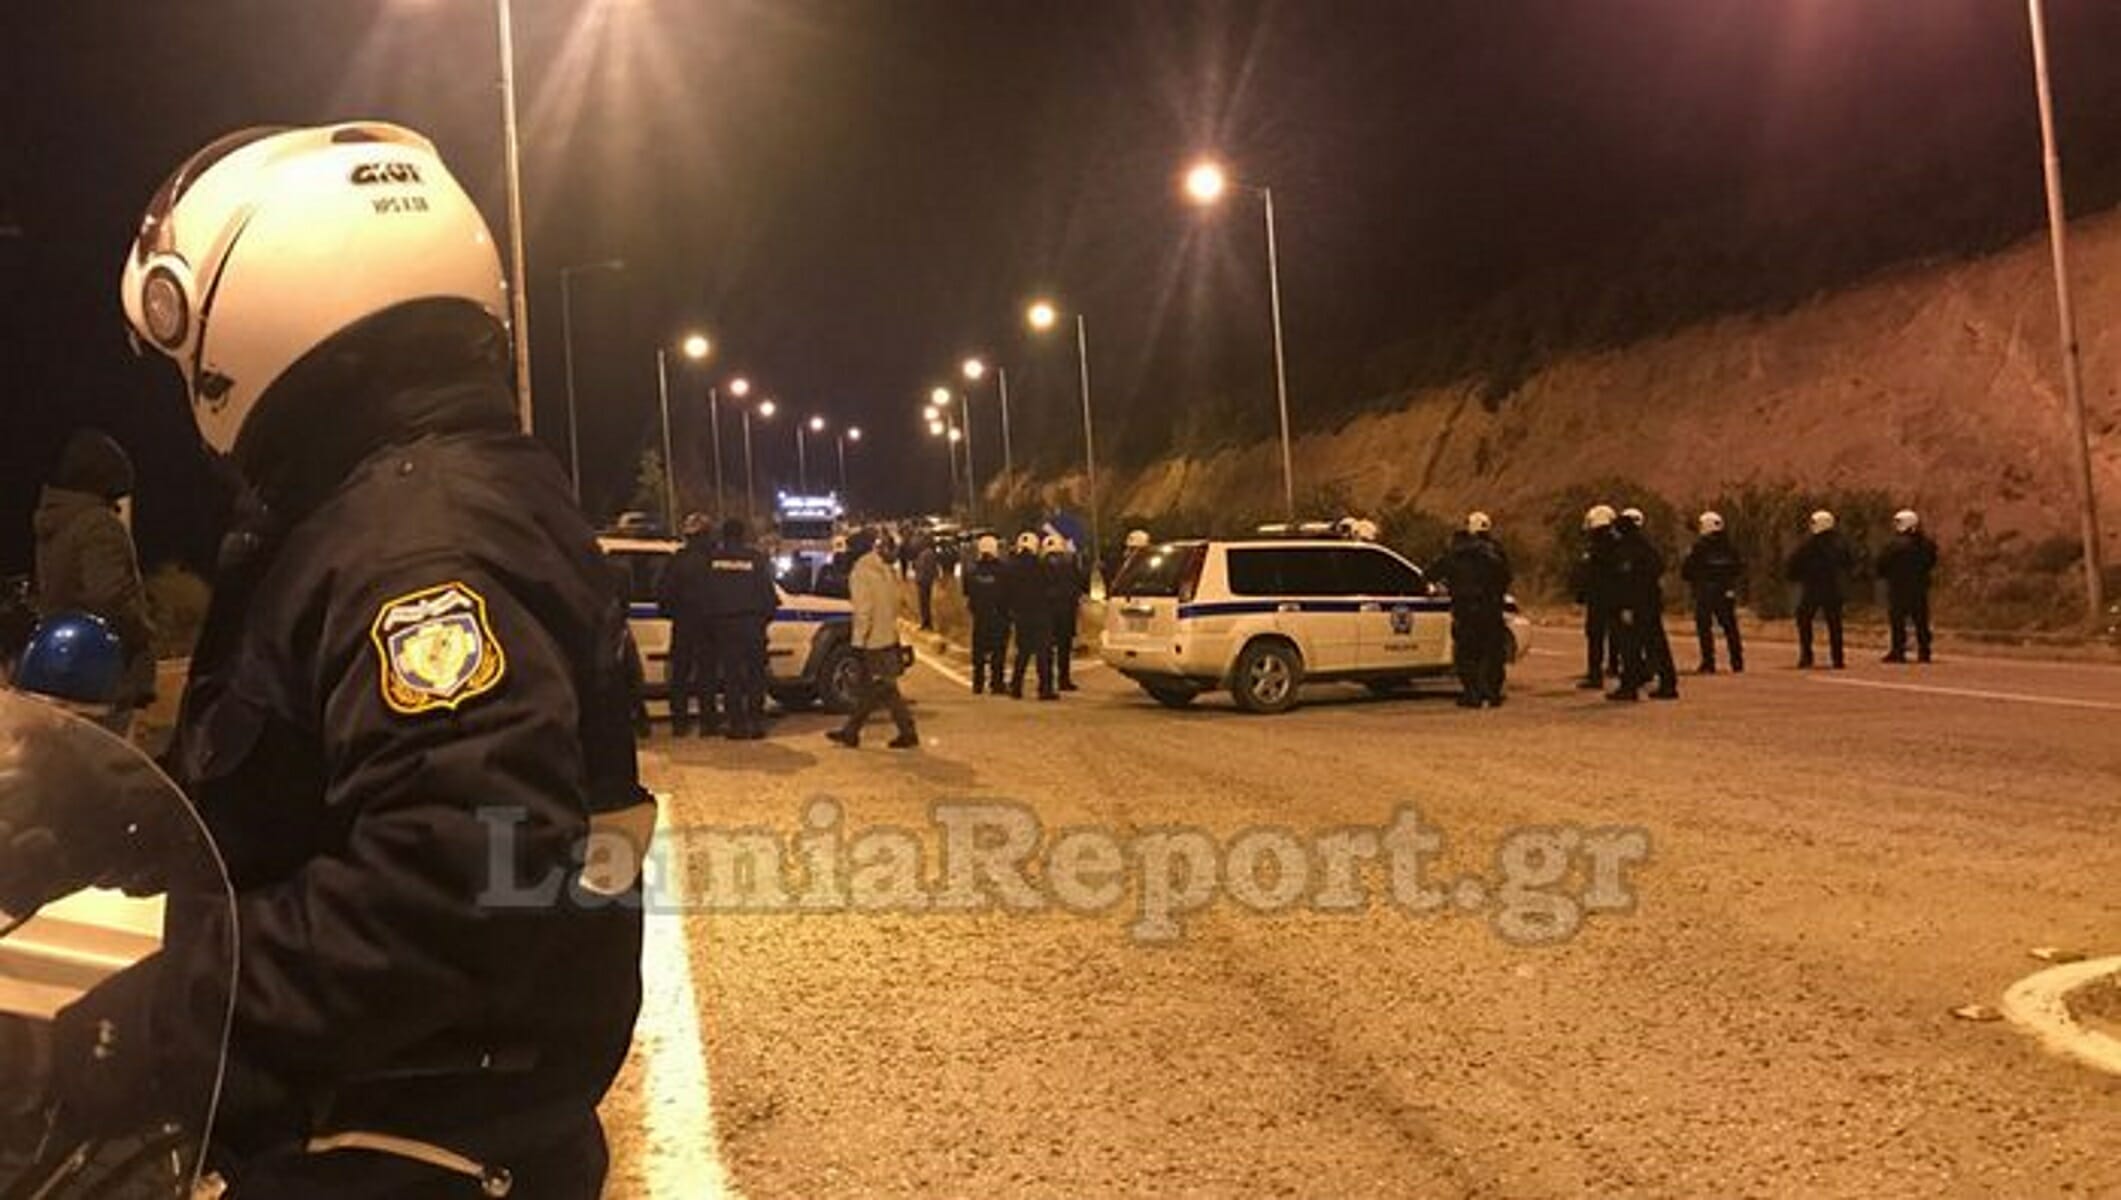 Πετροπόλεμος στη Λαμία με οπαδούς της ΑΕΛ! Συλλήψεις και τραυματισμός αστυνομικού